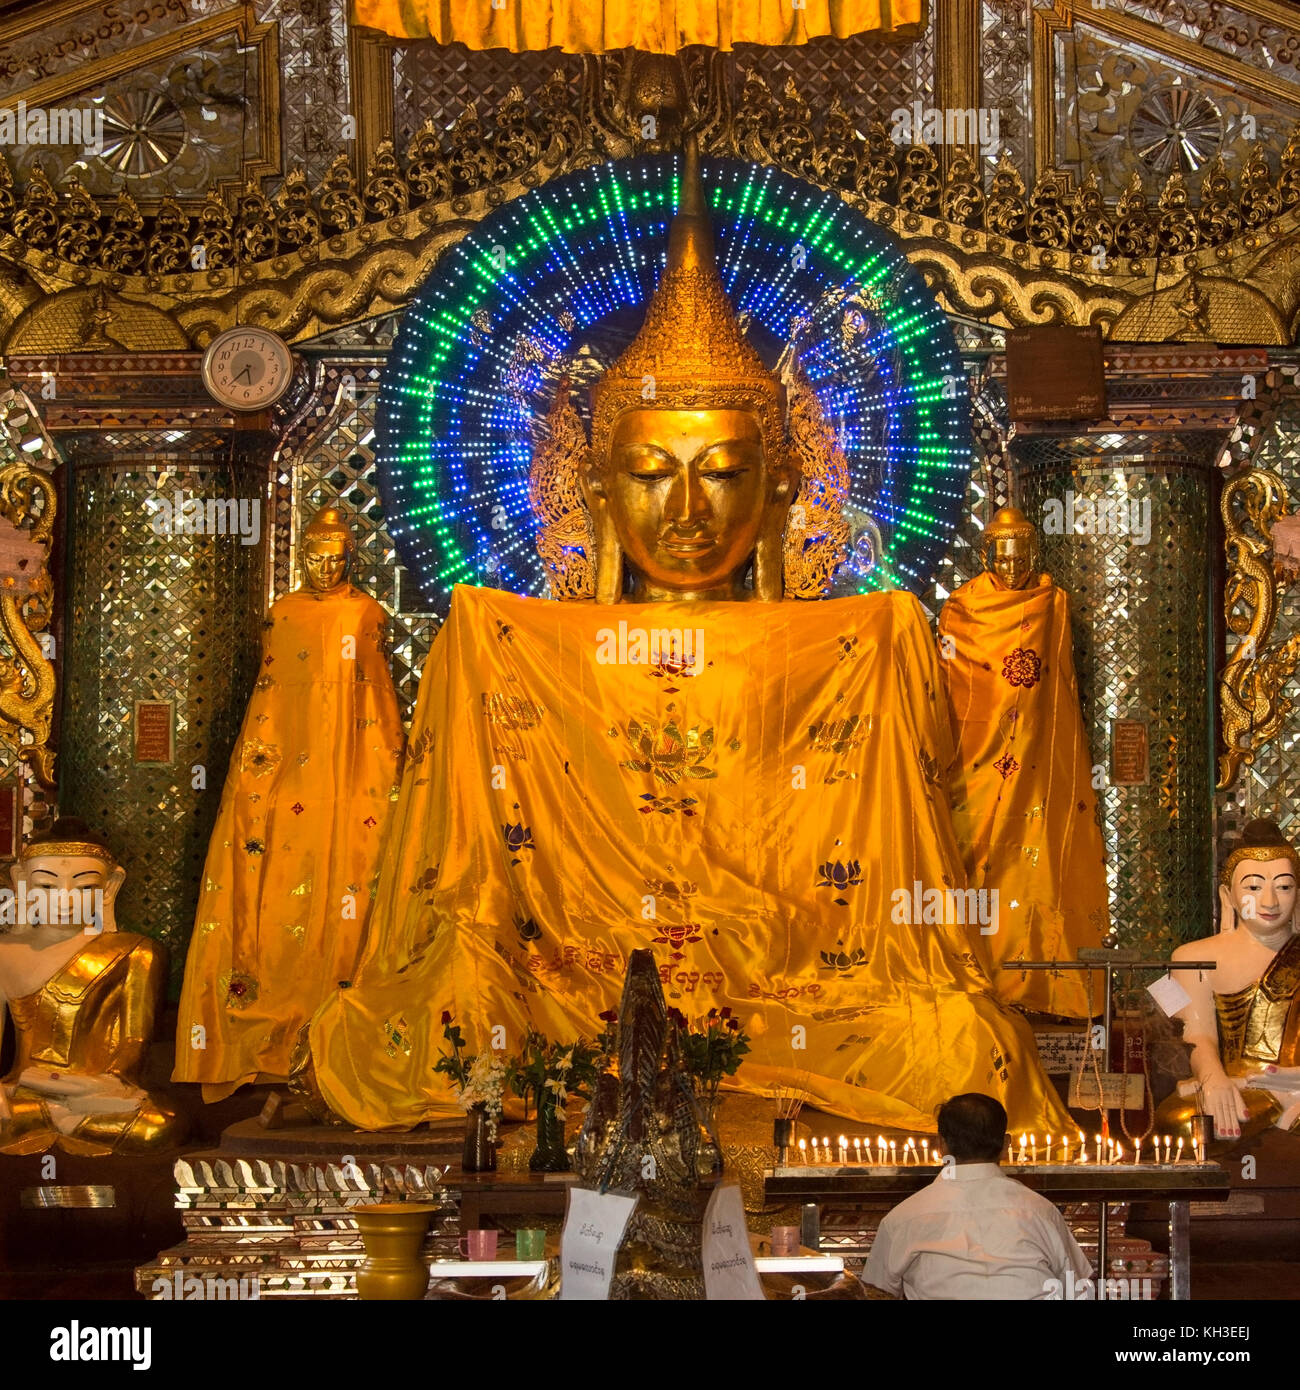 Images de Bouddha dans la pagode Shwedagon, officiellement intitulé Zedi Shwedagon Daw, dans la ville de Yangon au Myanmar (Birmanie). Banque D'Images